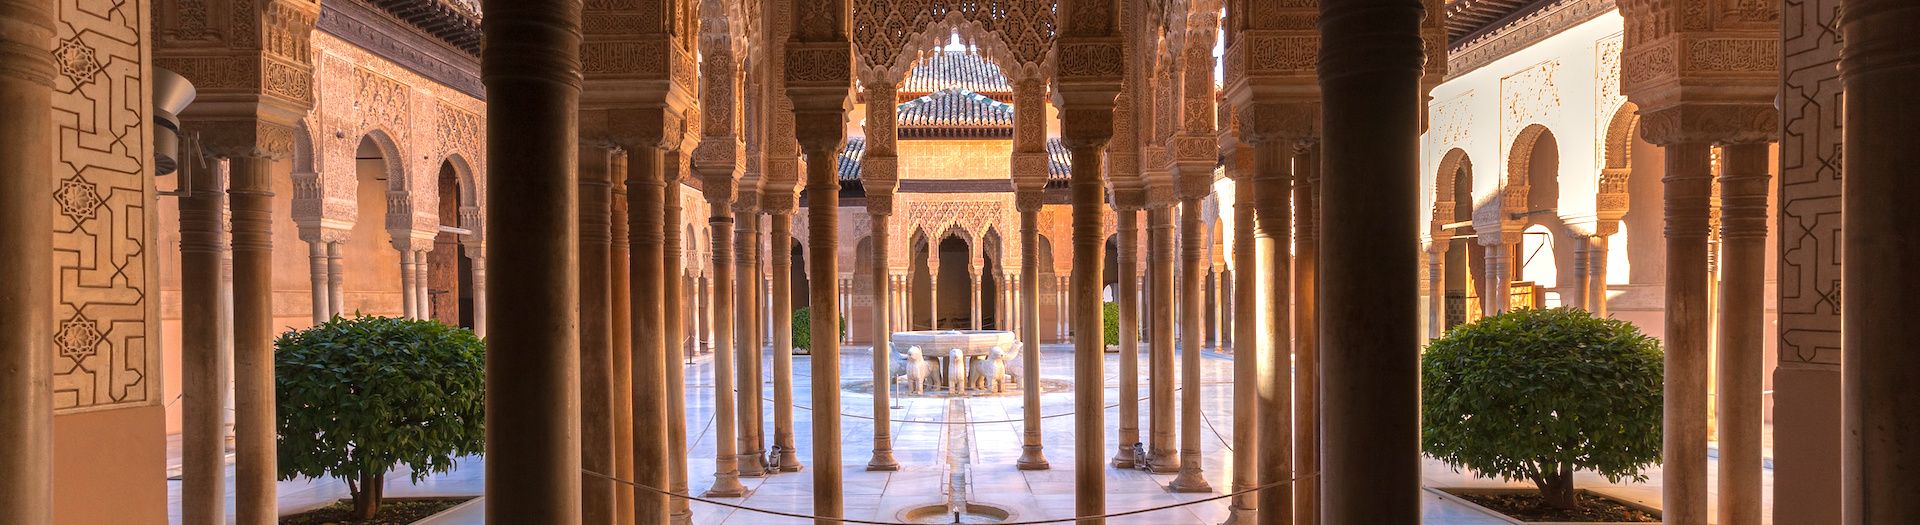 Alhambra in Granada Spain